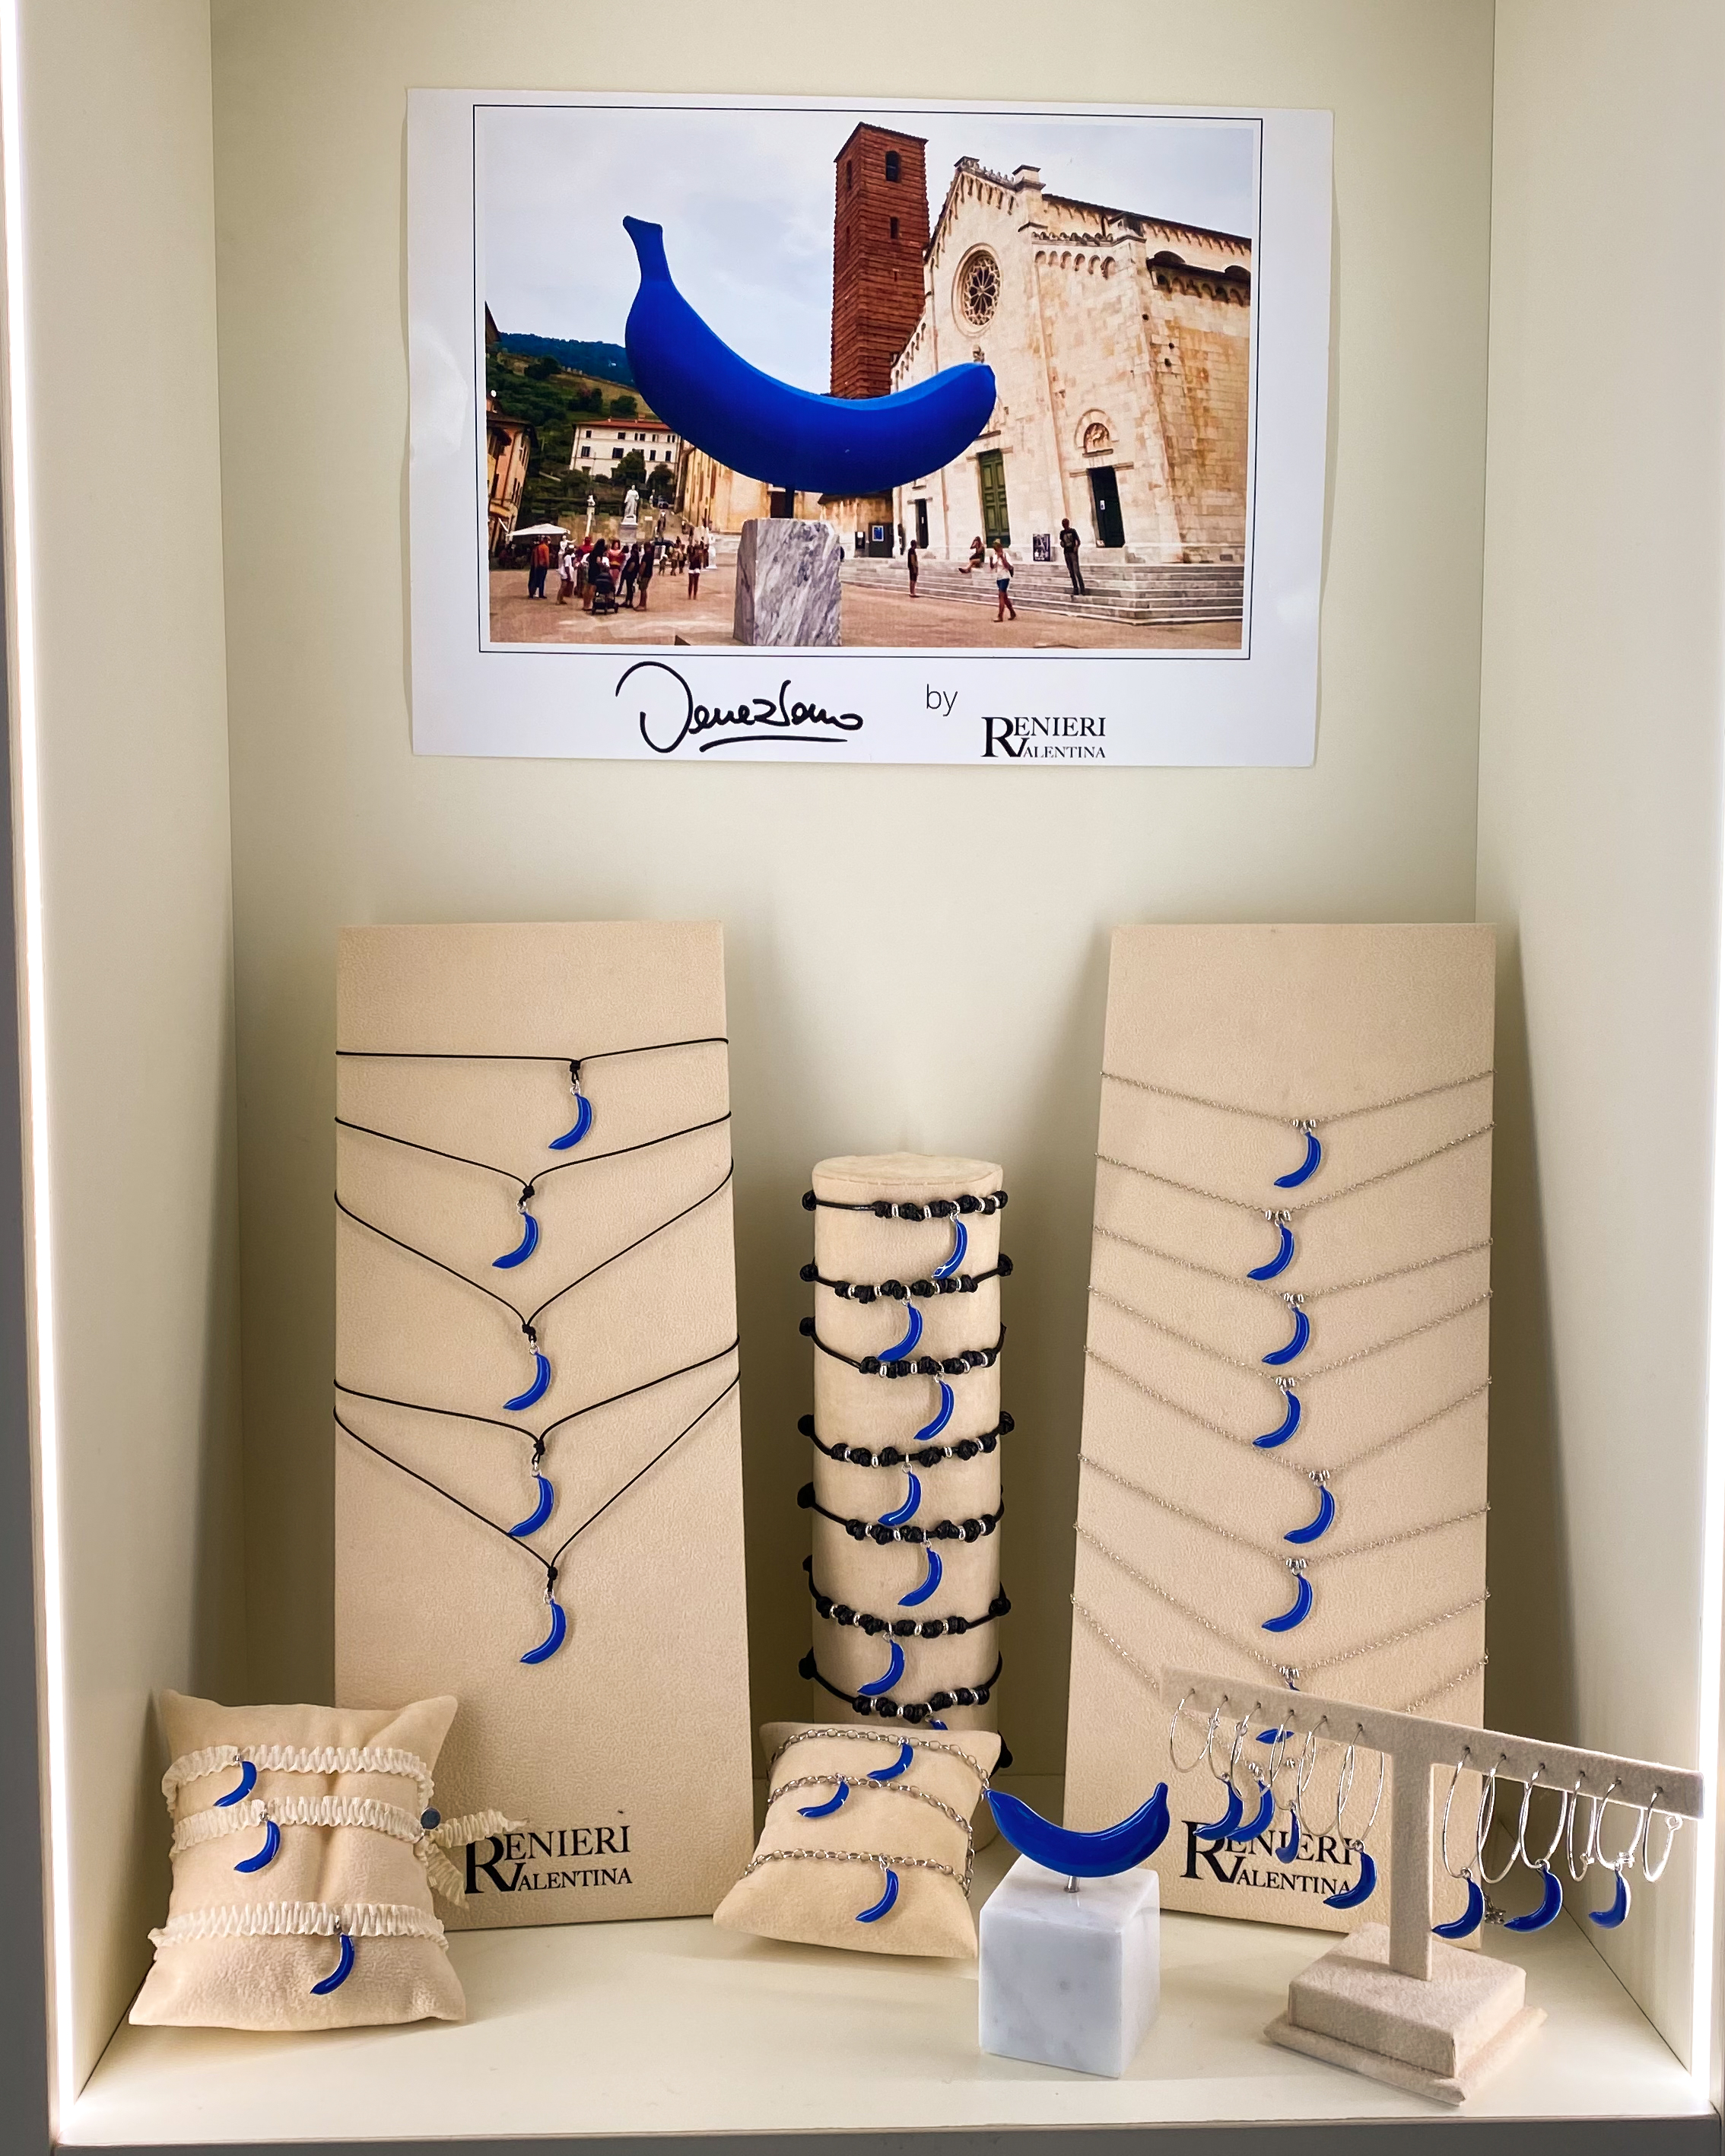 Collezione dedicata alla Banana blu, cofirmata con l'artista Giuseppe Veneziano